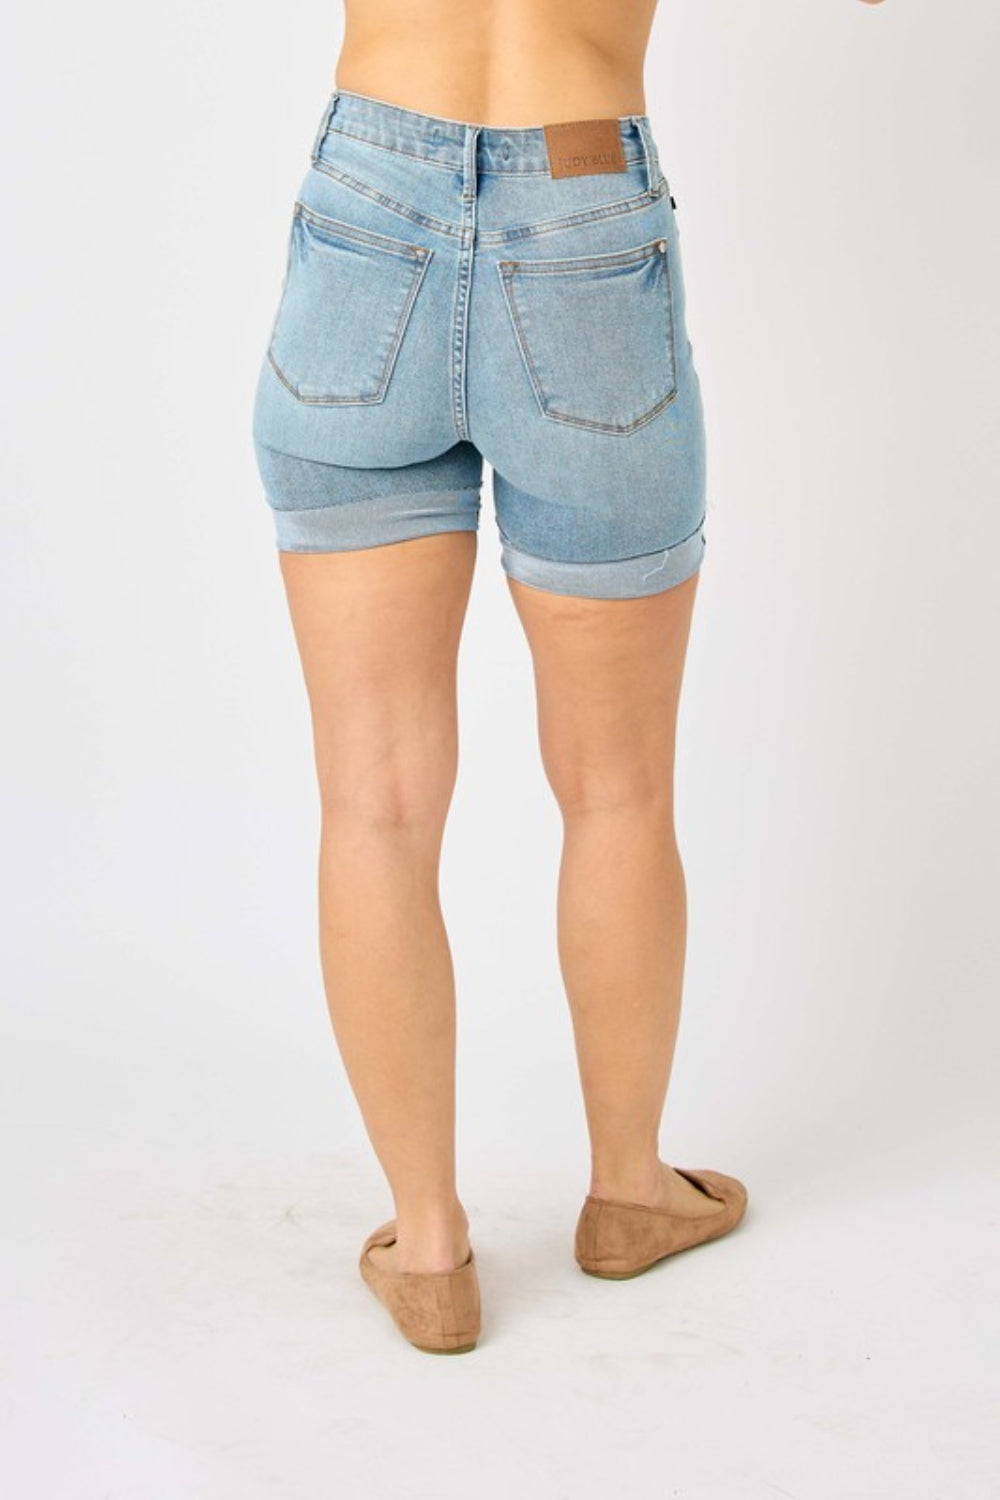 Judy Blue Tummy Control Denim Shorts